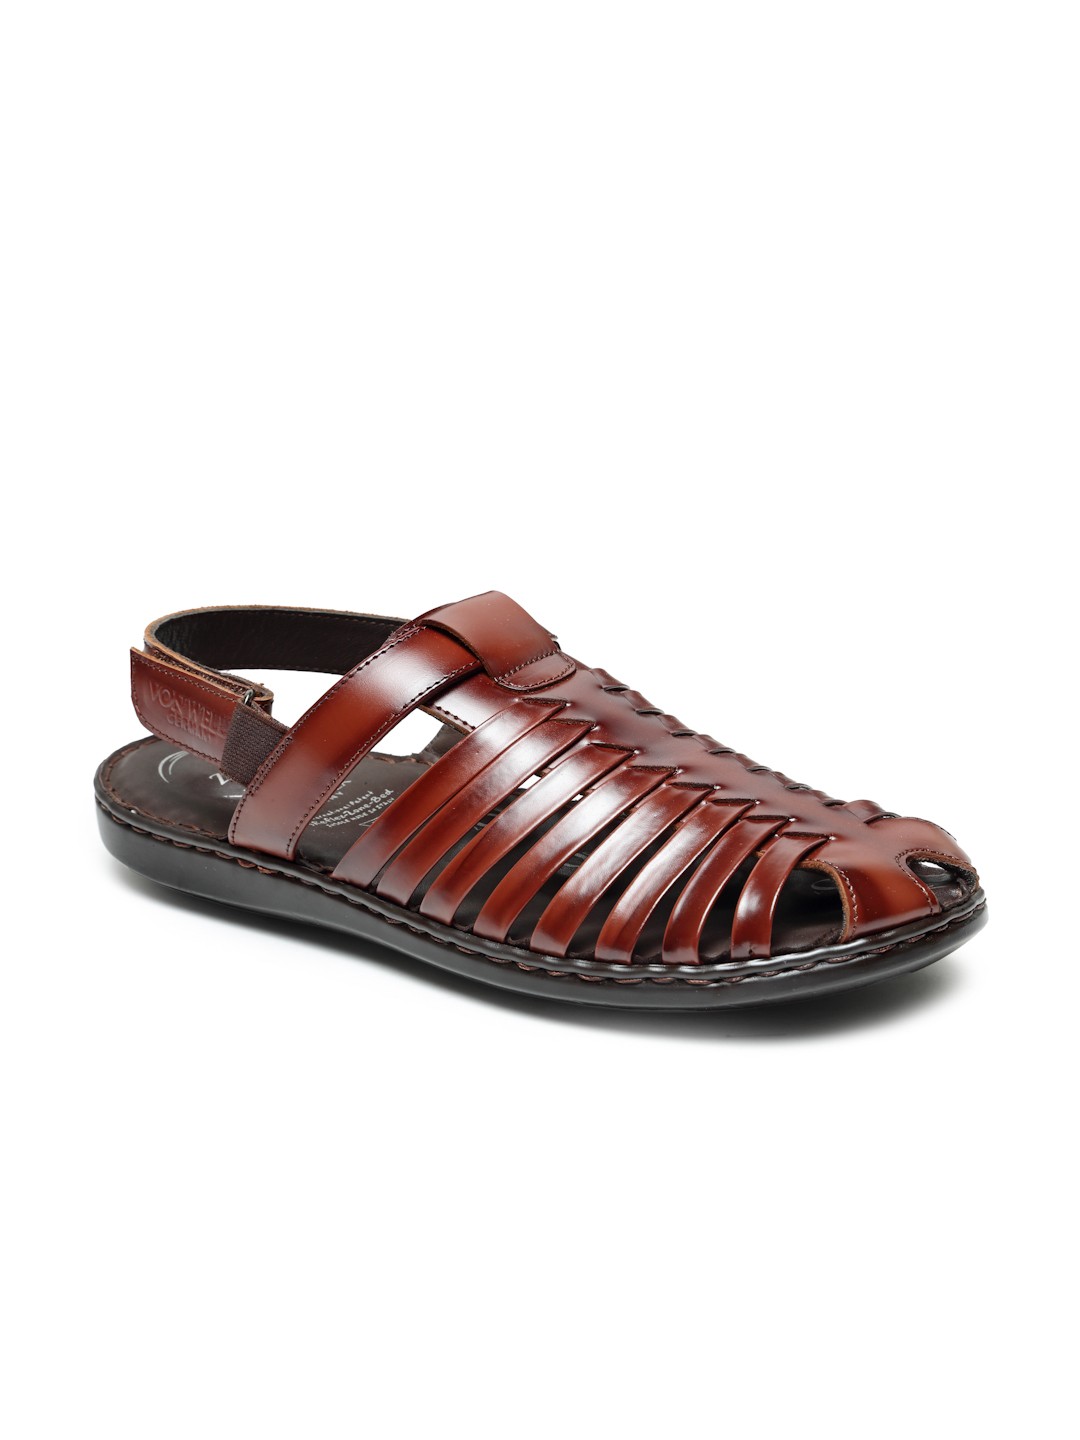 Buy Von Wellx Germany Comfort Men's Multi Sandals Volker Online in Ludhiana